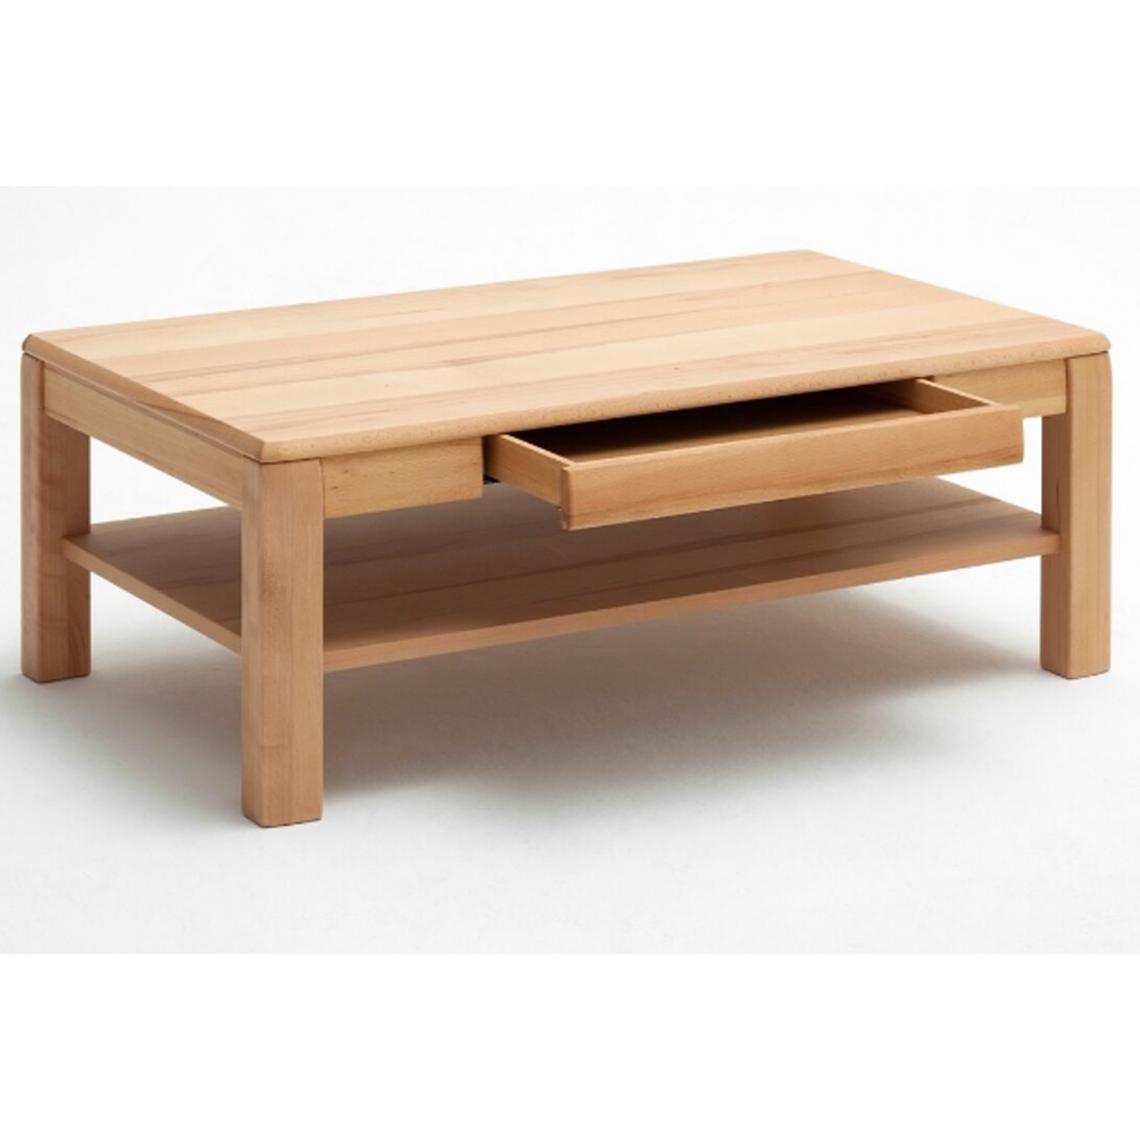 Pegane - Table basse design en hêtre huilé - 115 x 42 x 65 cm - Tables basses